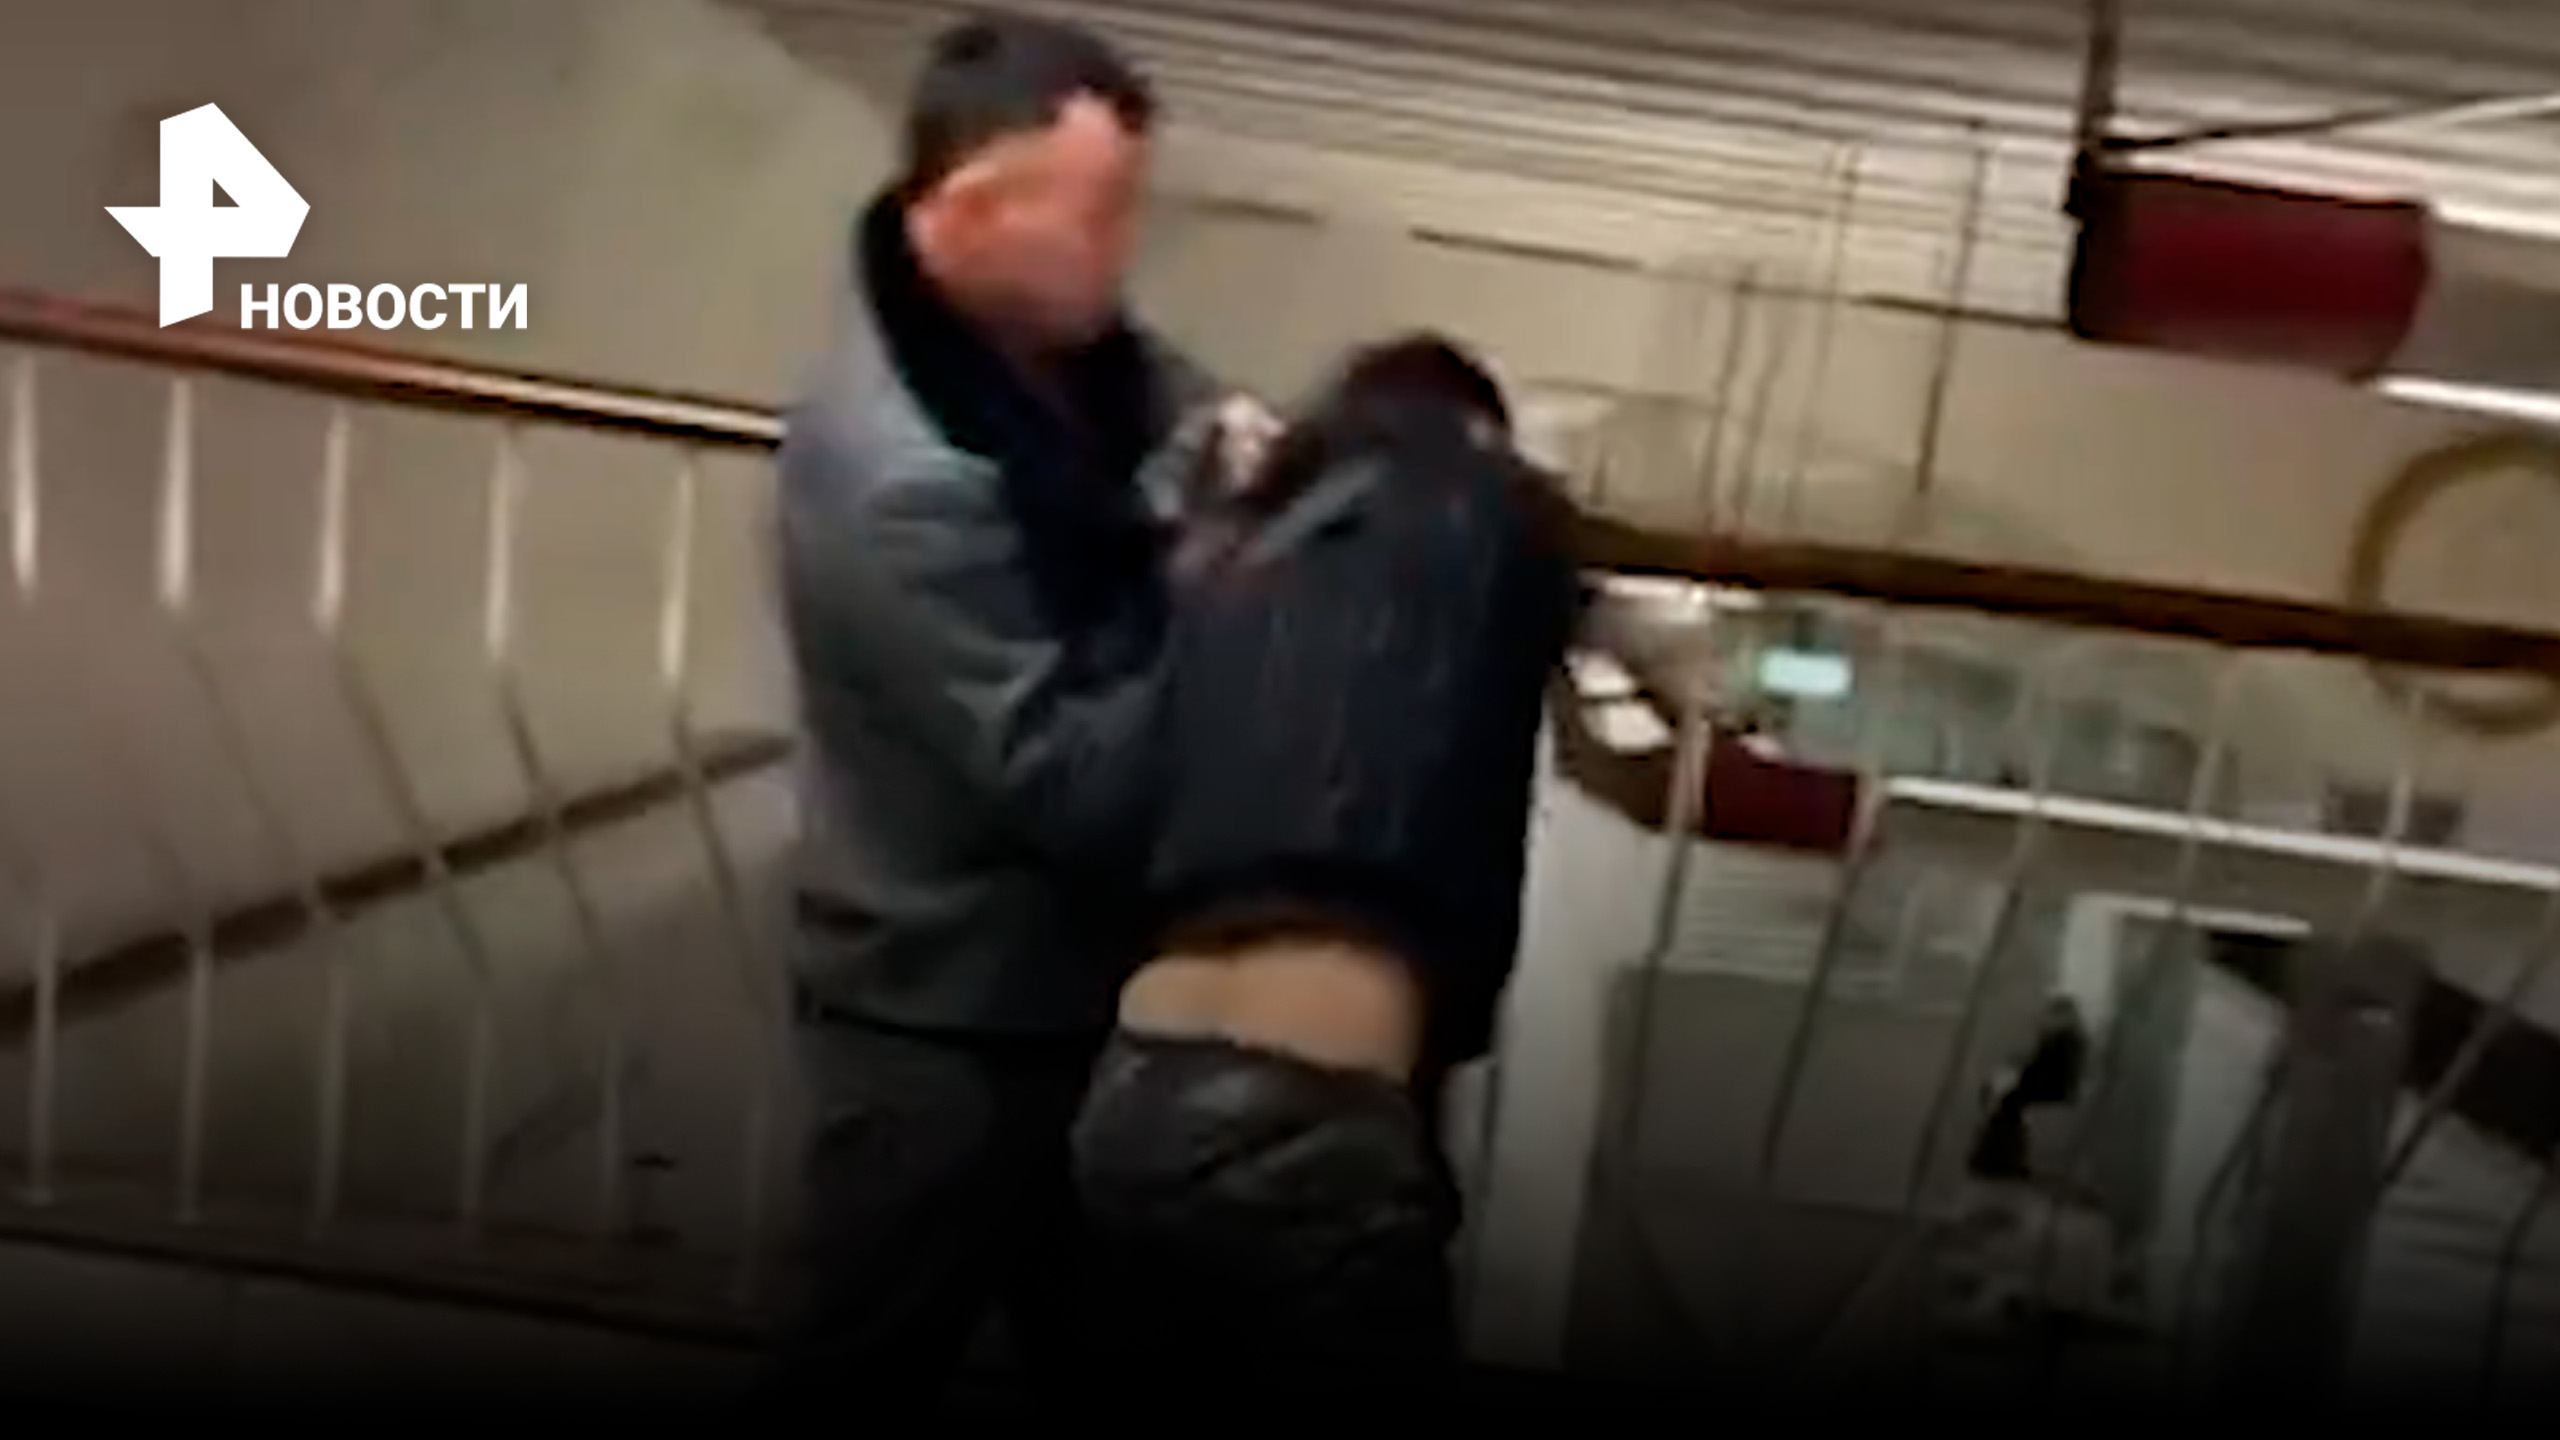 В метро Москвы один мигрант избил другого за то, что тот назвал его "чуркой"